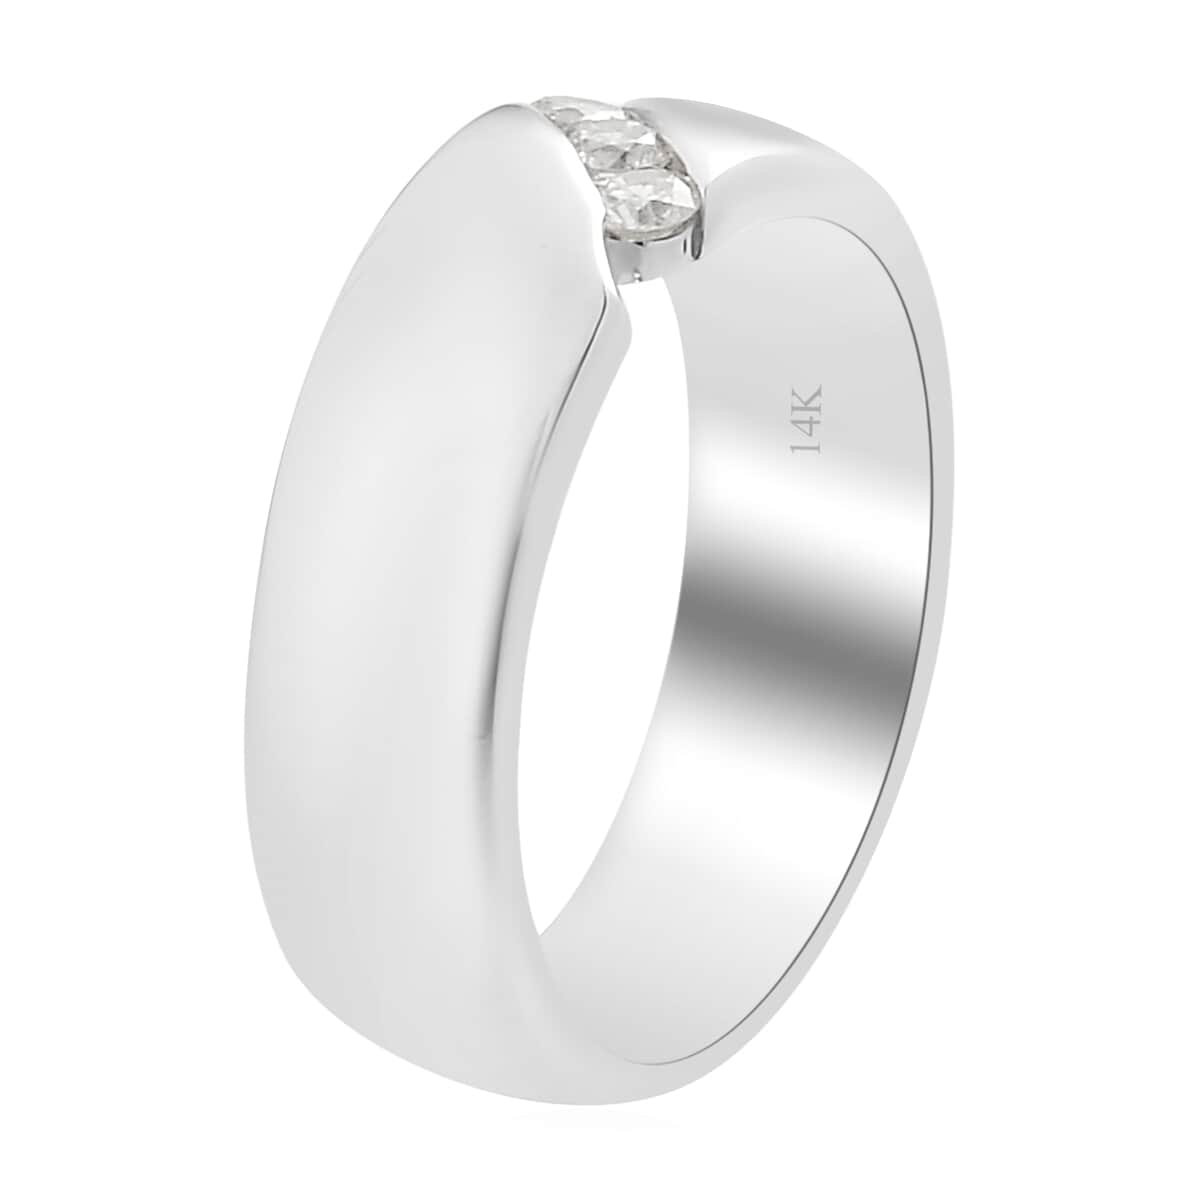 Luxoro 14K White Gold I2 Diamond Band Ring (Size 8.0) 0.15 ctw image number 3